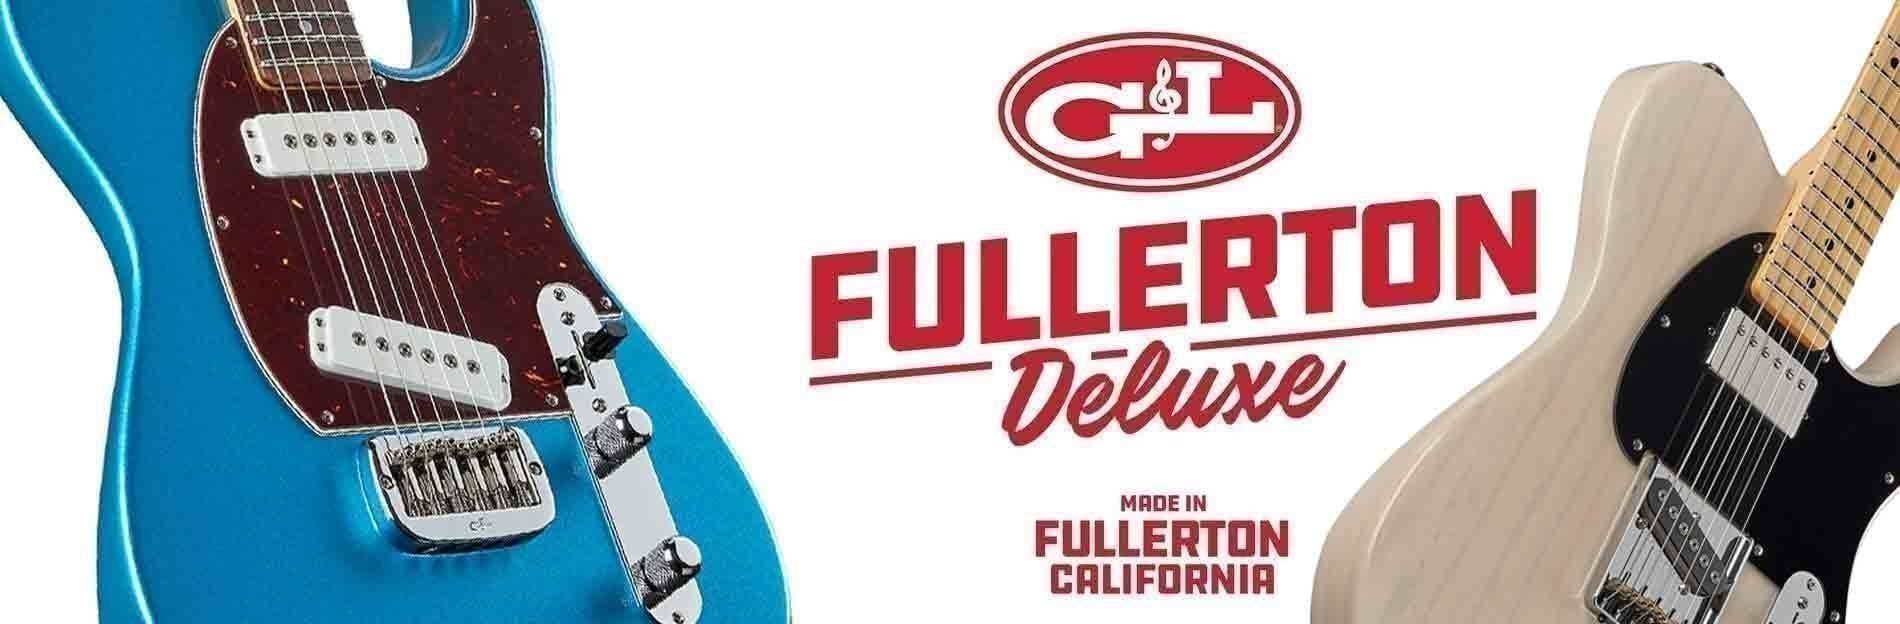 G&L Guitars Fullerton Deluxe